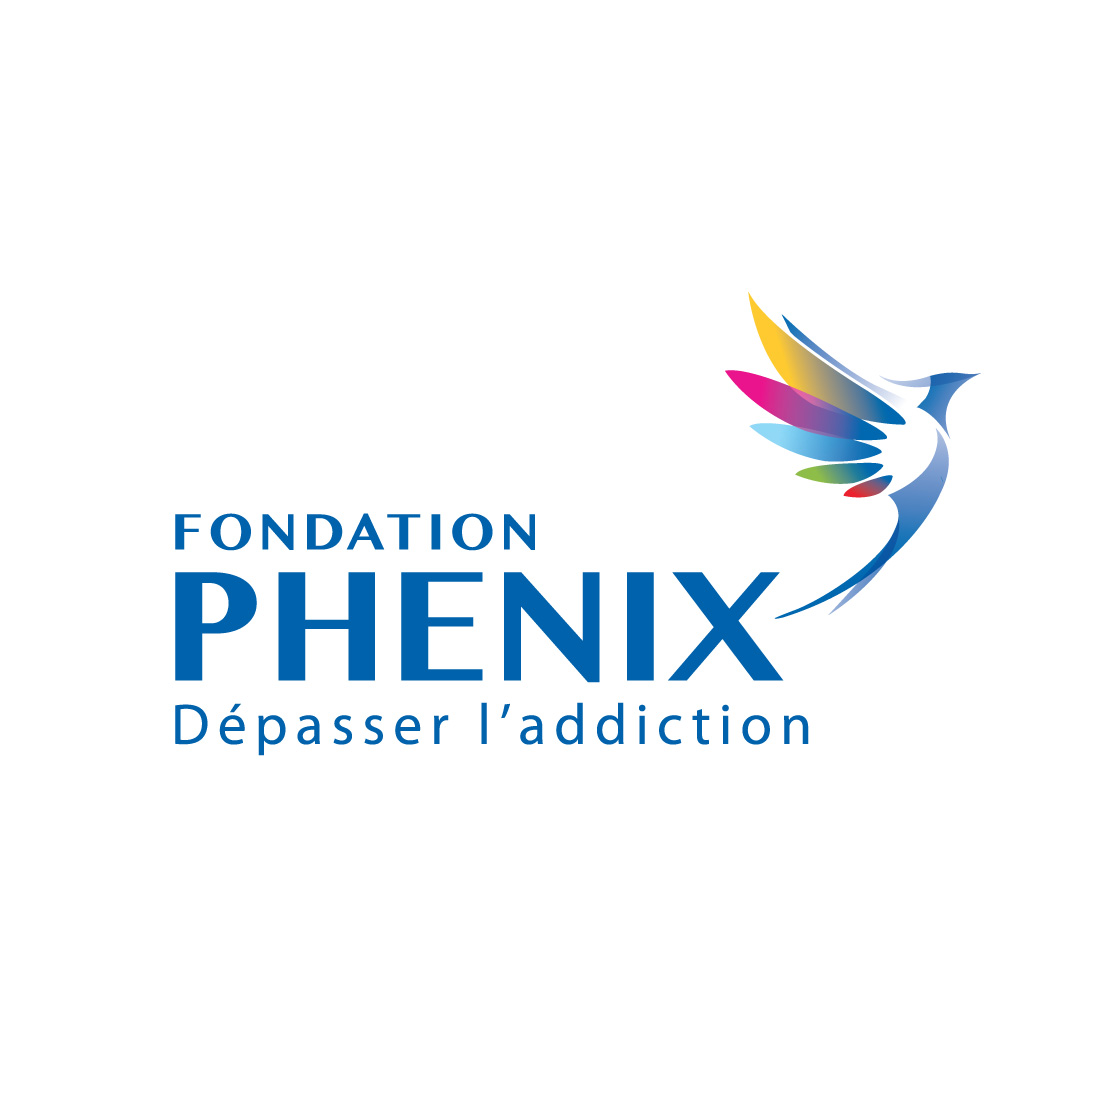 Fondation Phénix